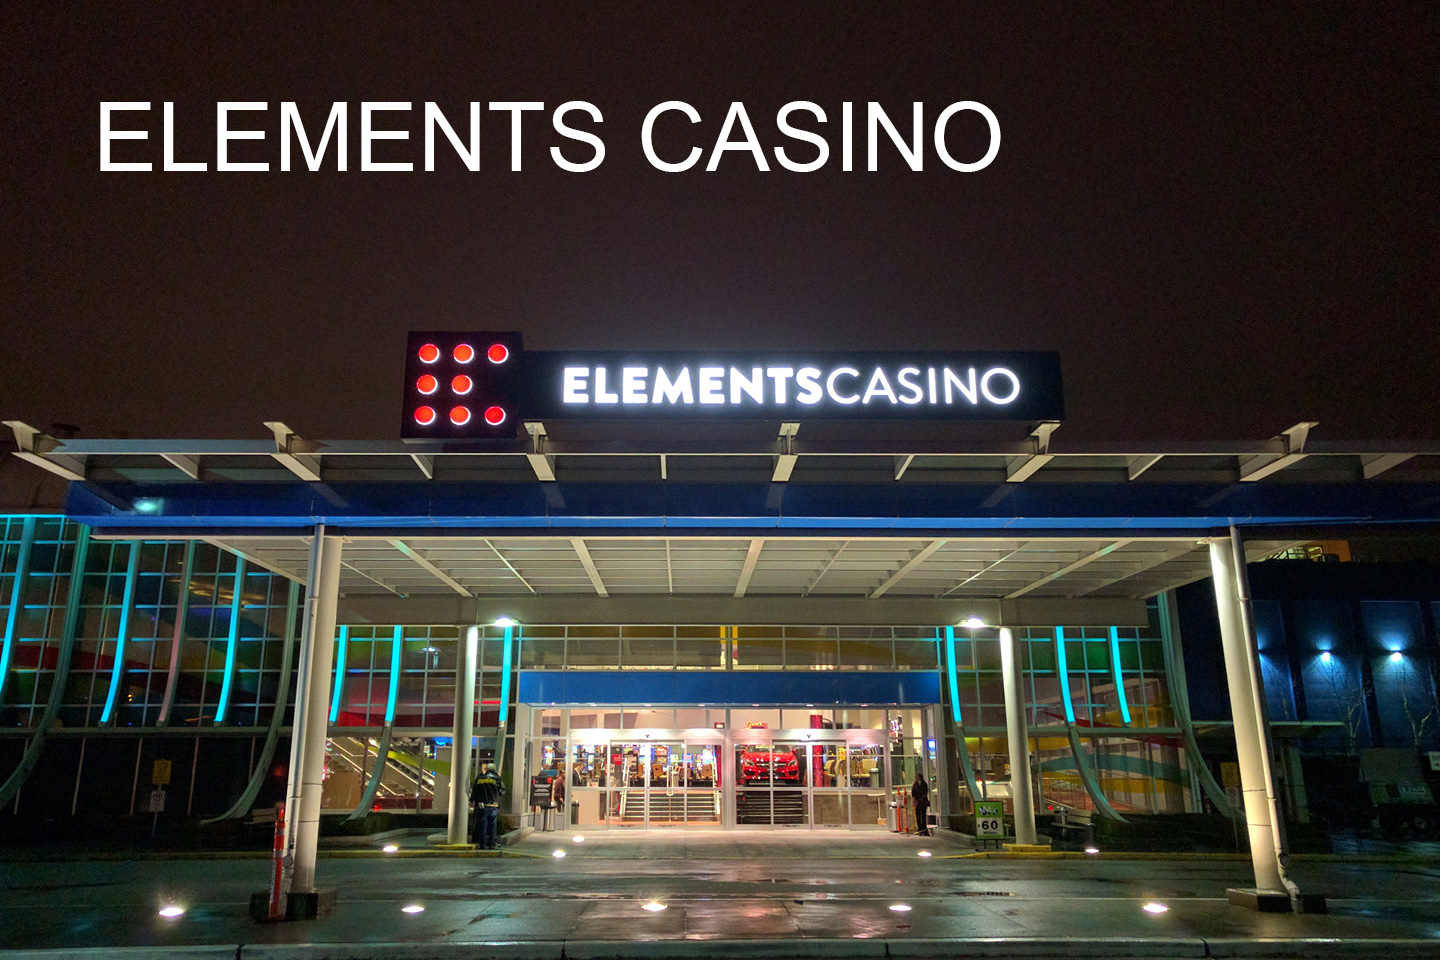 Element Casino Surrey